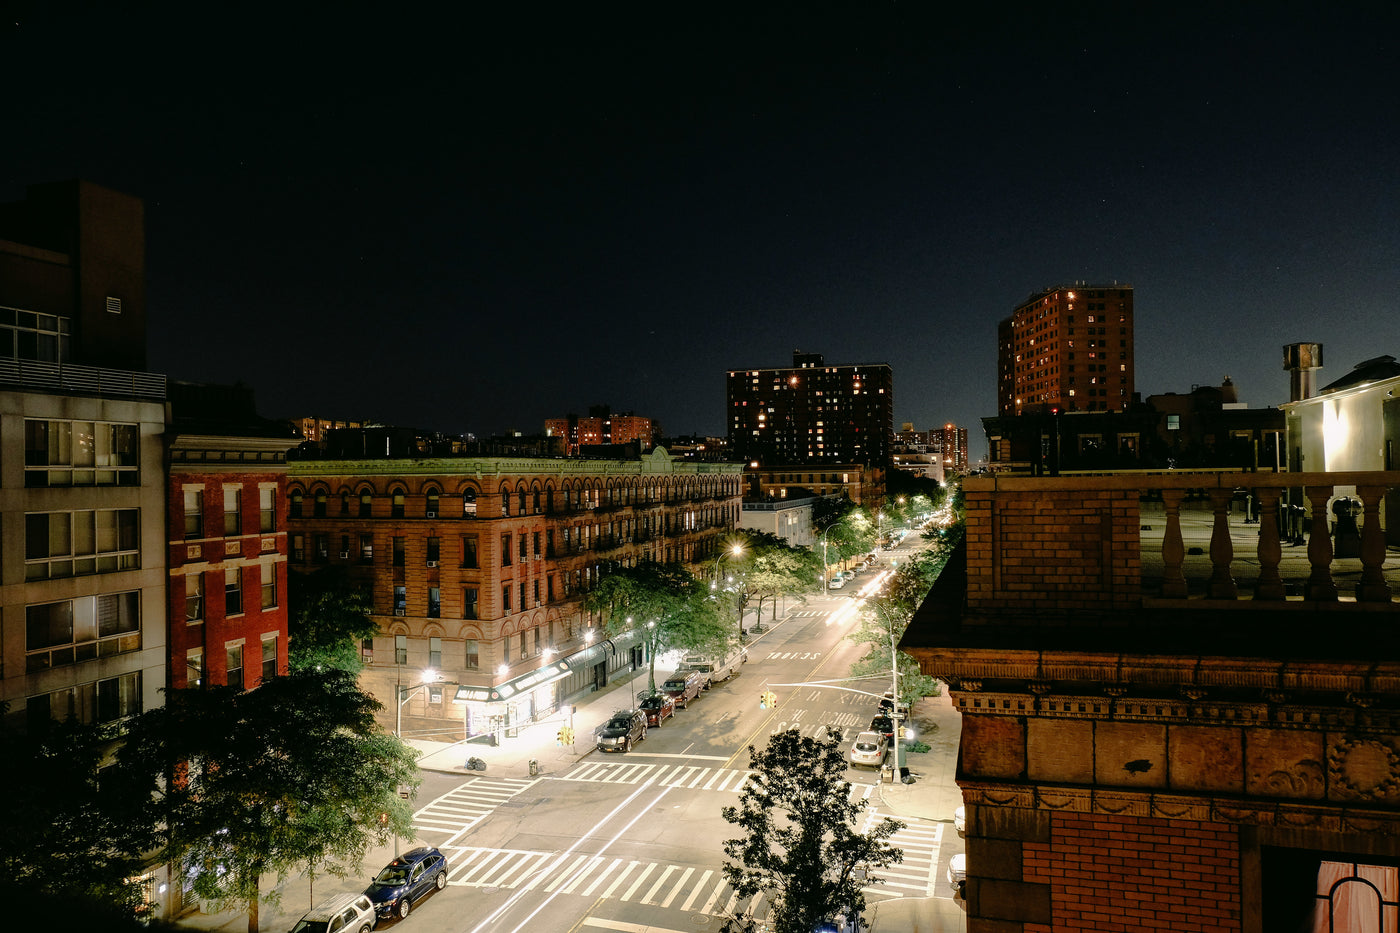 Eine hellerleuchtete Straße bei Nacht. Rechts und links ist sie mit alten, hohen Backsteingebäuden und Bäumen gesäumt.